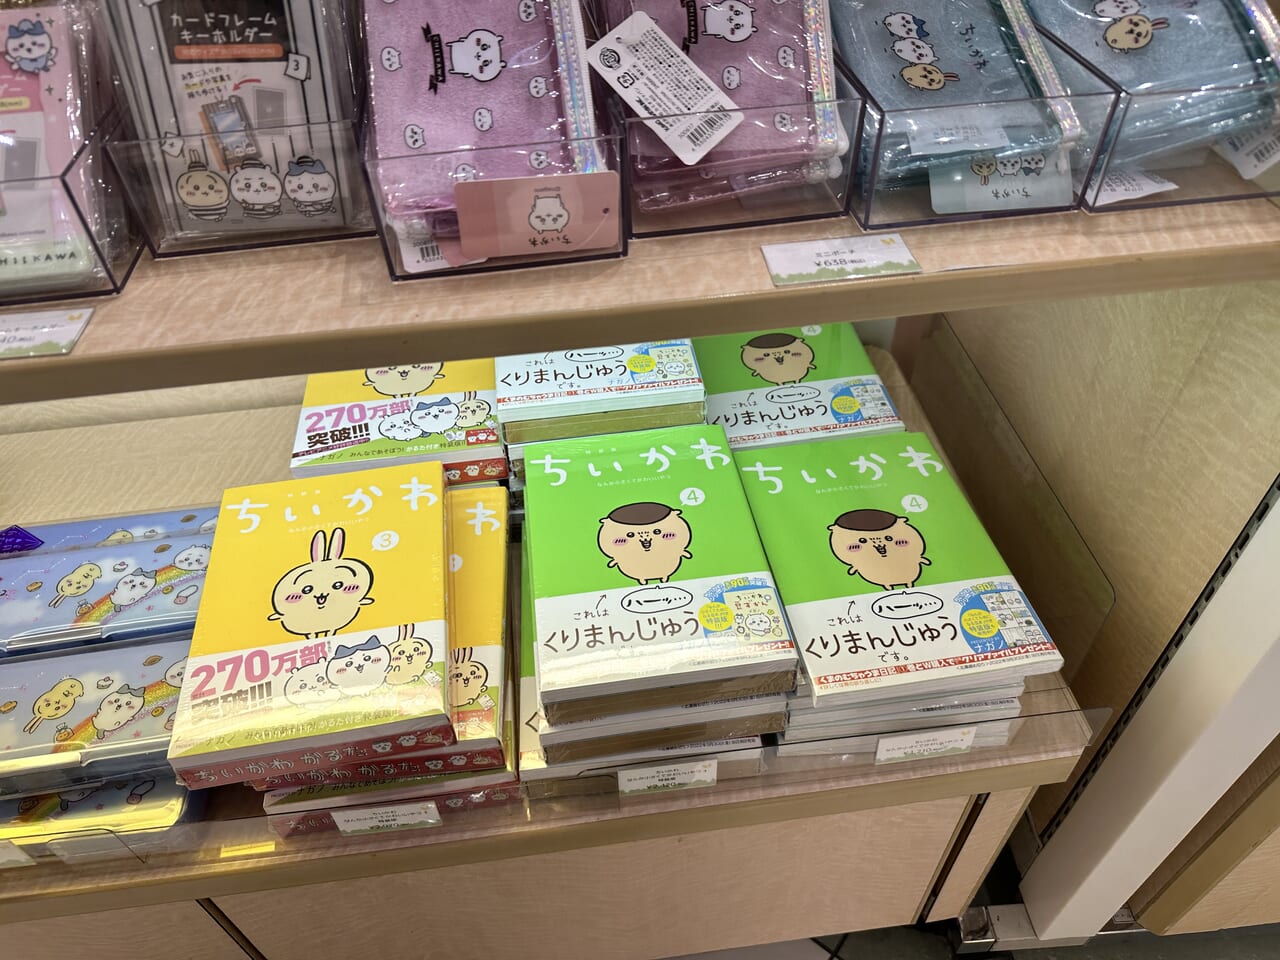 イオンモール甲府昭和店で開催中のちいかわポップアップストアで販売されている商品